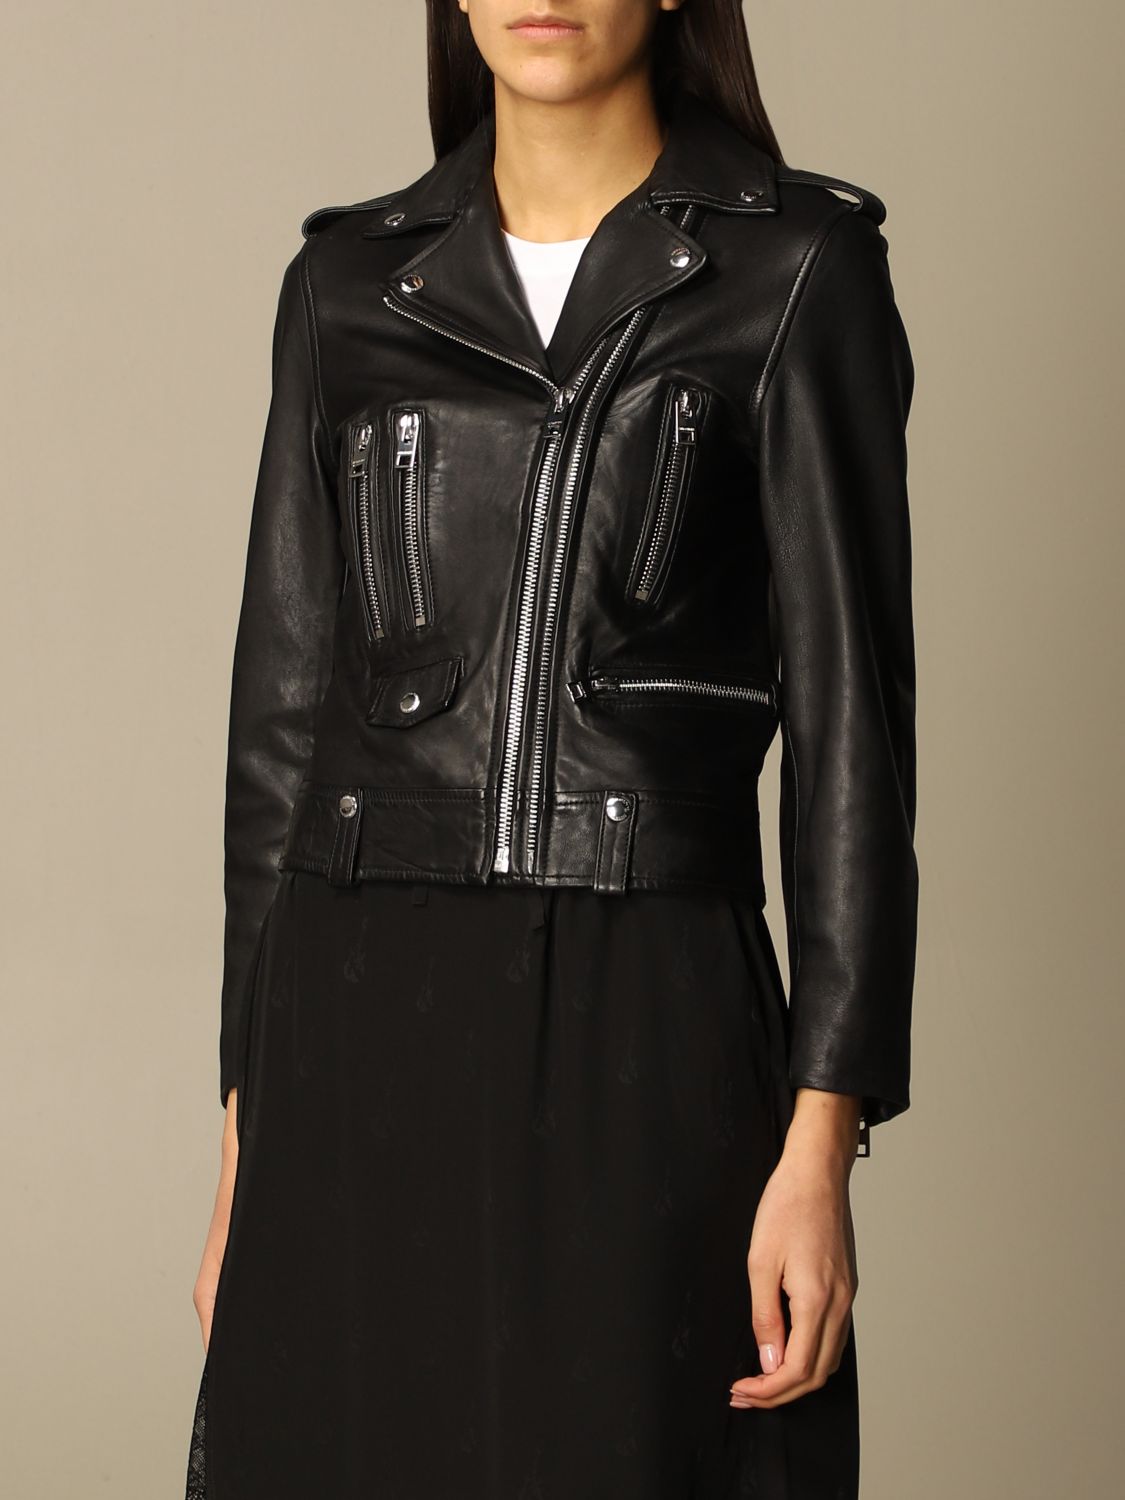 ZADIG & VOLTAIRE: jacket in real leather | Jacket Zadig & Voltaire ...